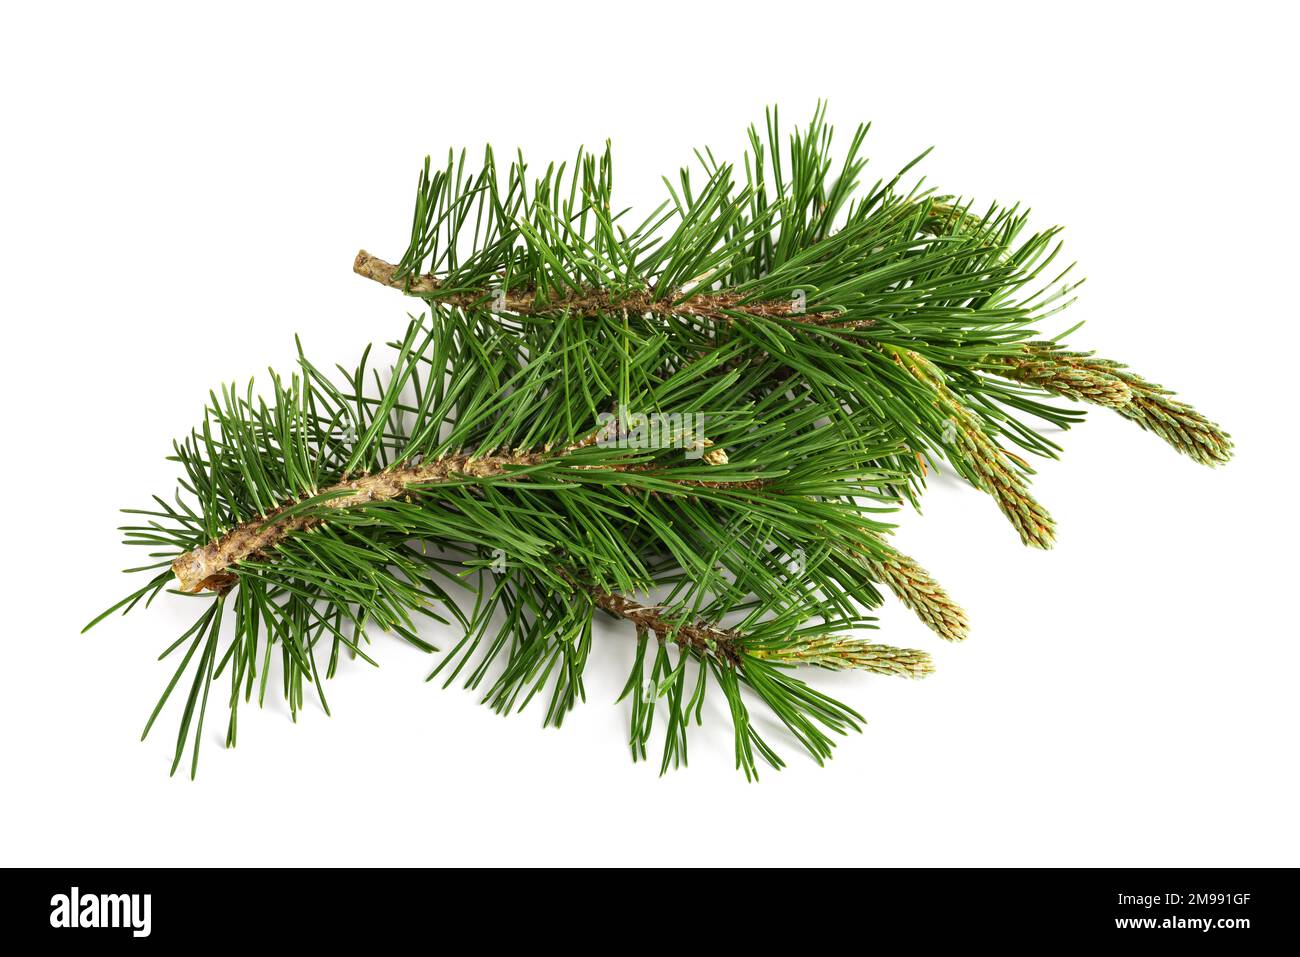 Mugo pine branches  isolated on white background Stock Photo